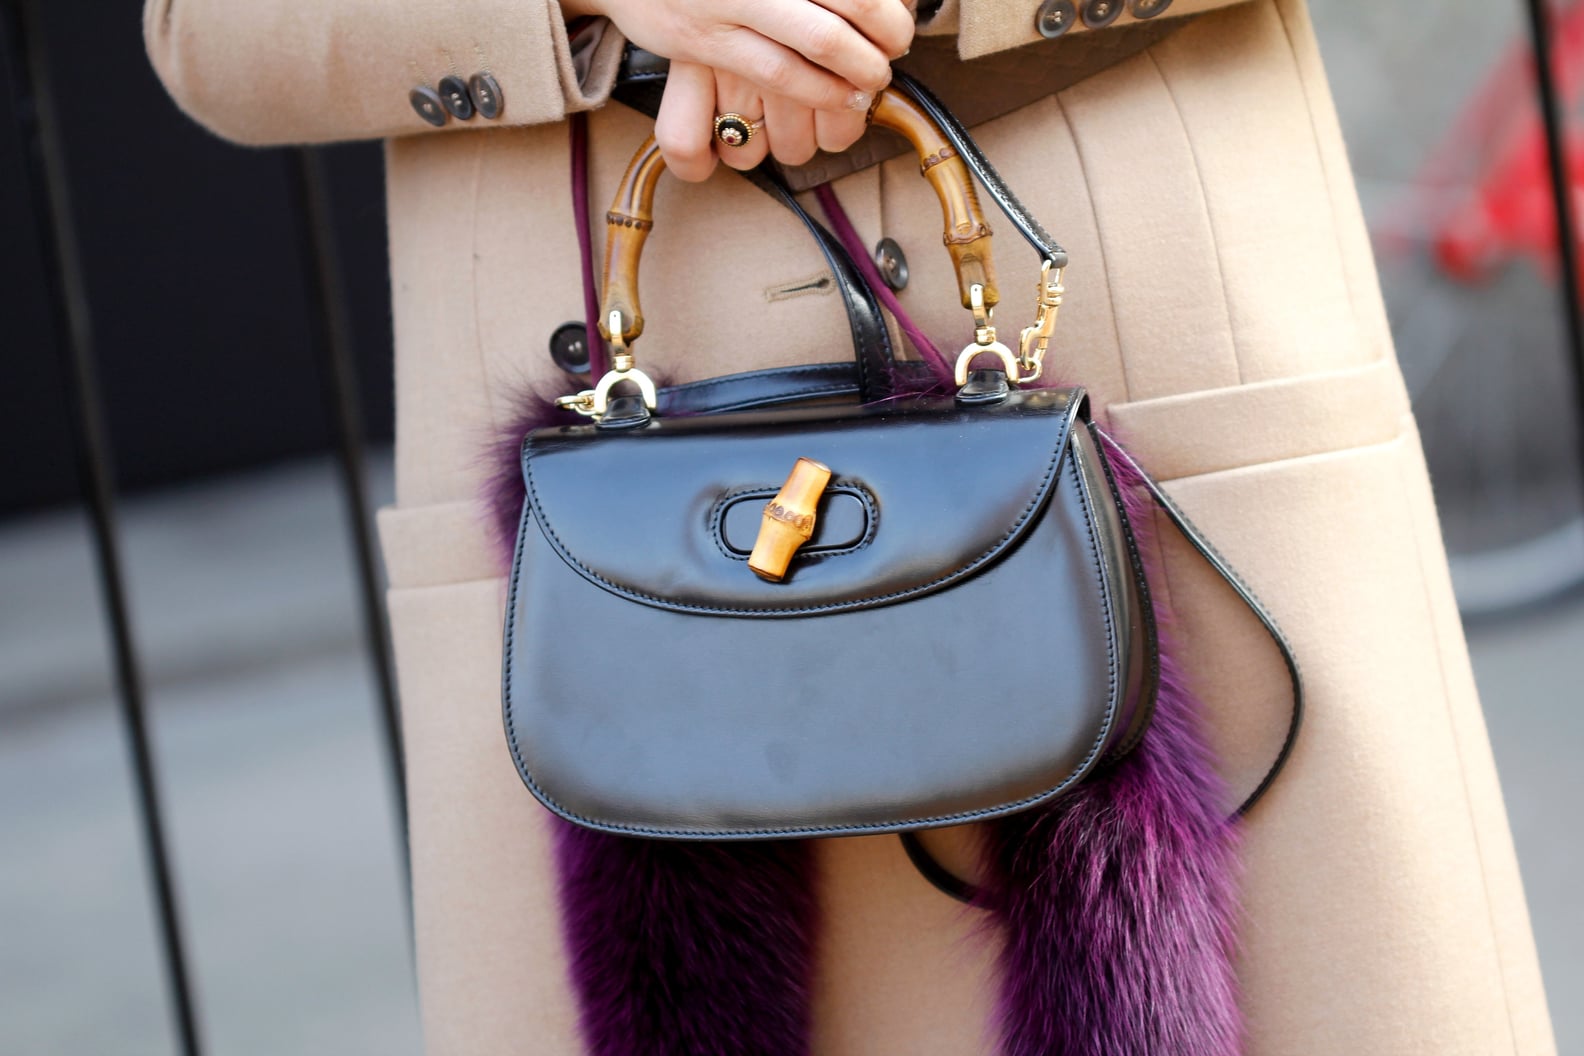 Most Iconic Handbags | POPSUGAR Fashion